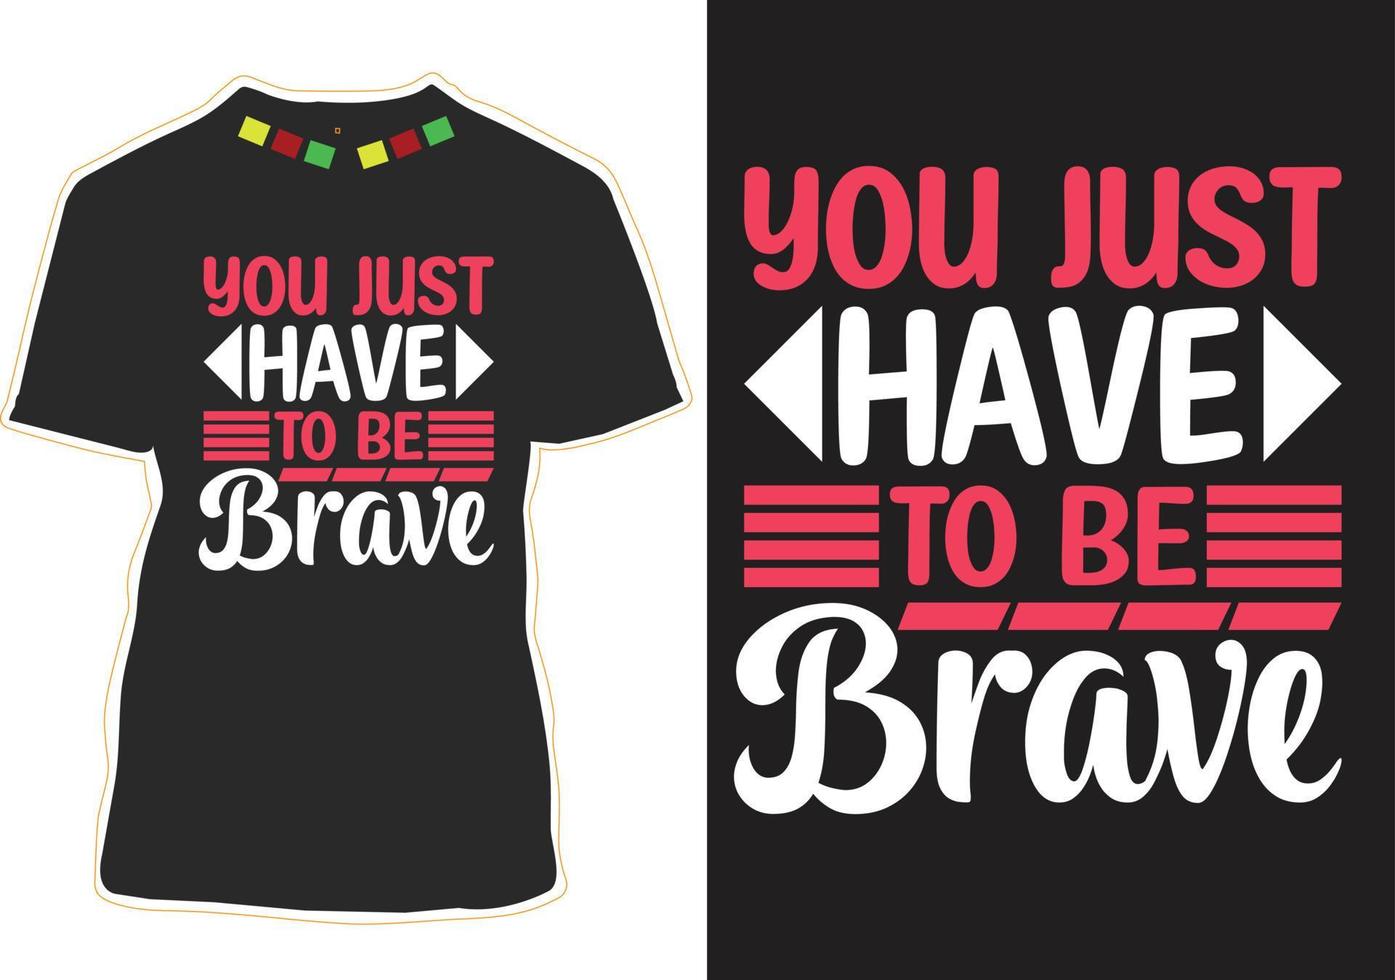 devi solo essere coraggioso, citazioni motivazionali, design di t-shirt vettore